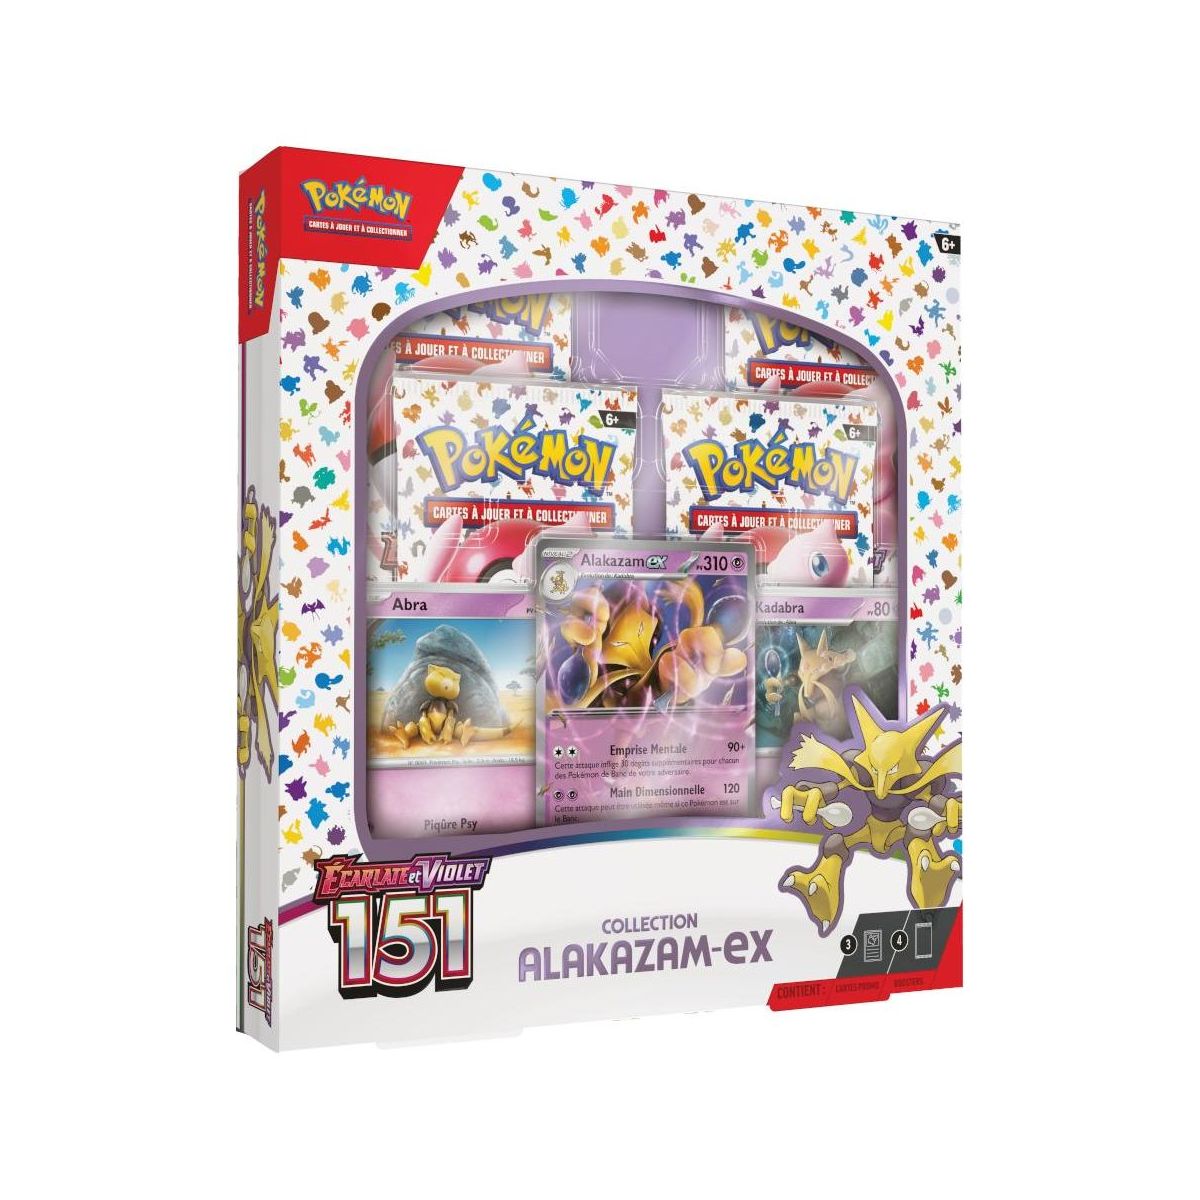 Pokémon – Alakazam EX-Sammelbox – Scharlachrot und Lila – 151 – [SV03.5 – EV03.5] – FR